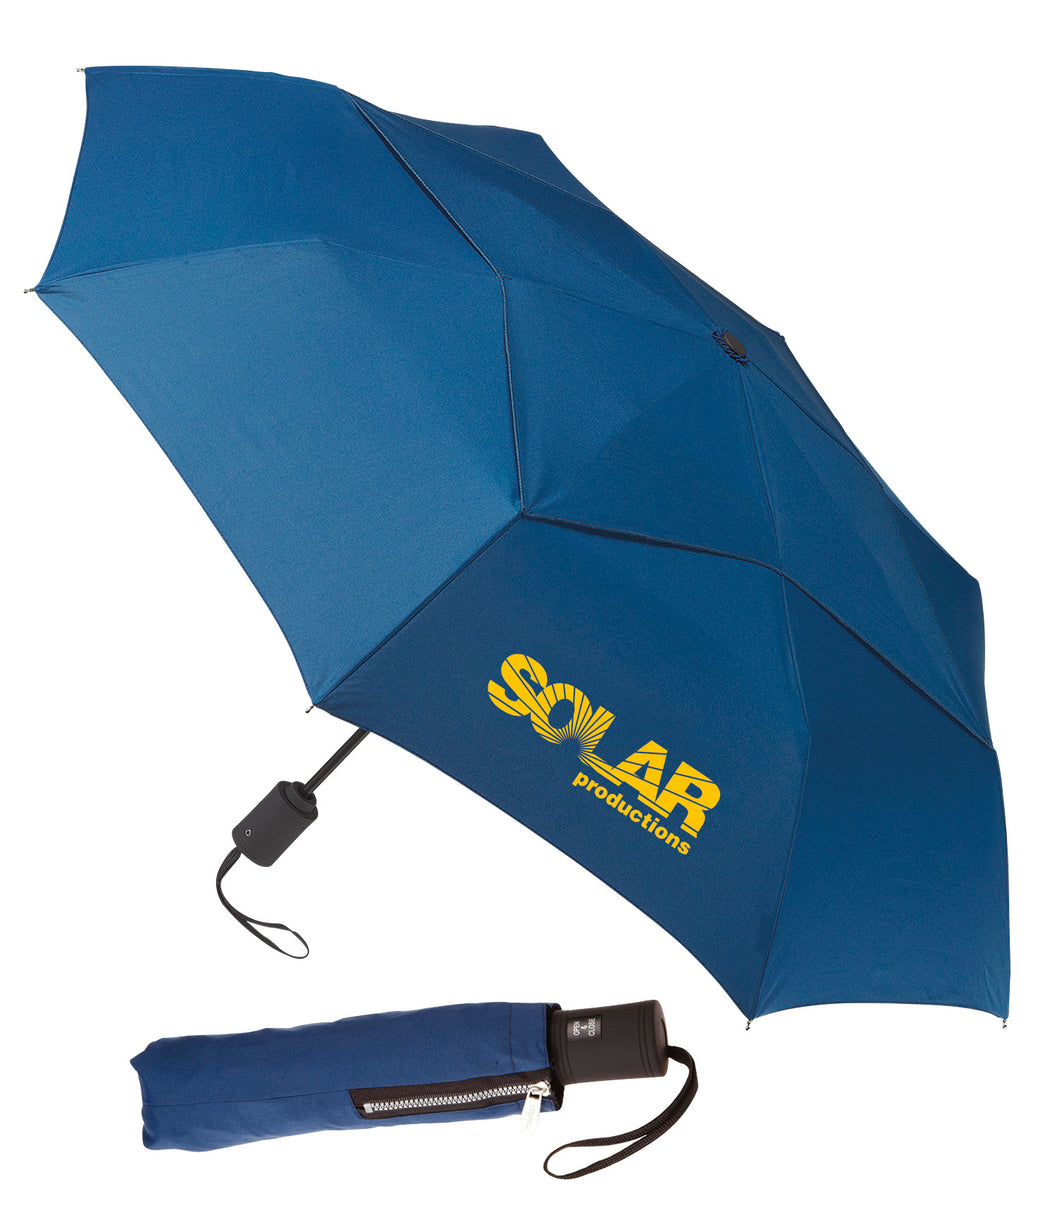 Executive Compact Umbrella w/Vented Top